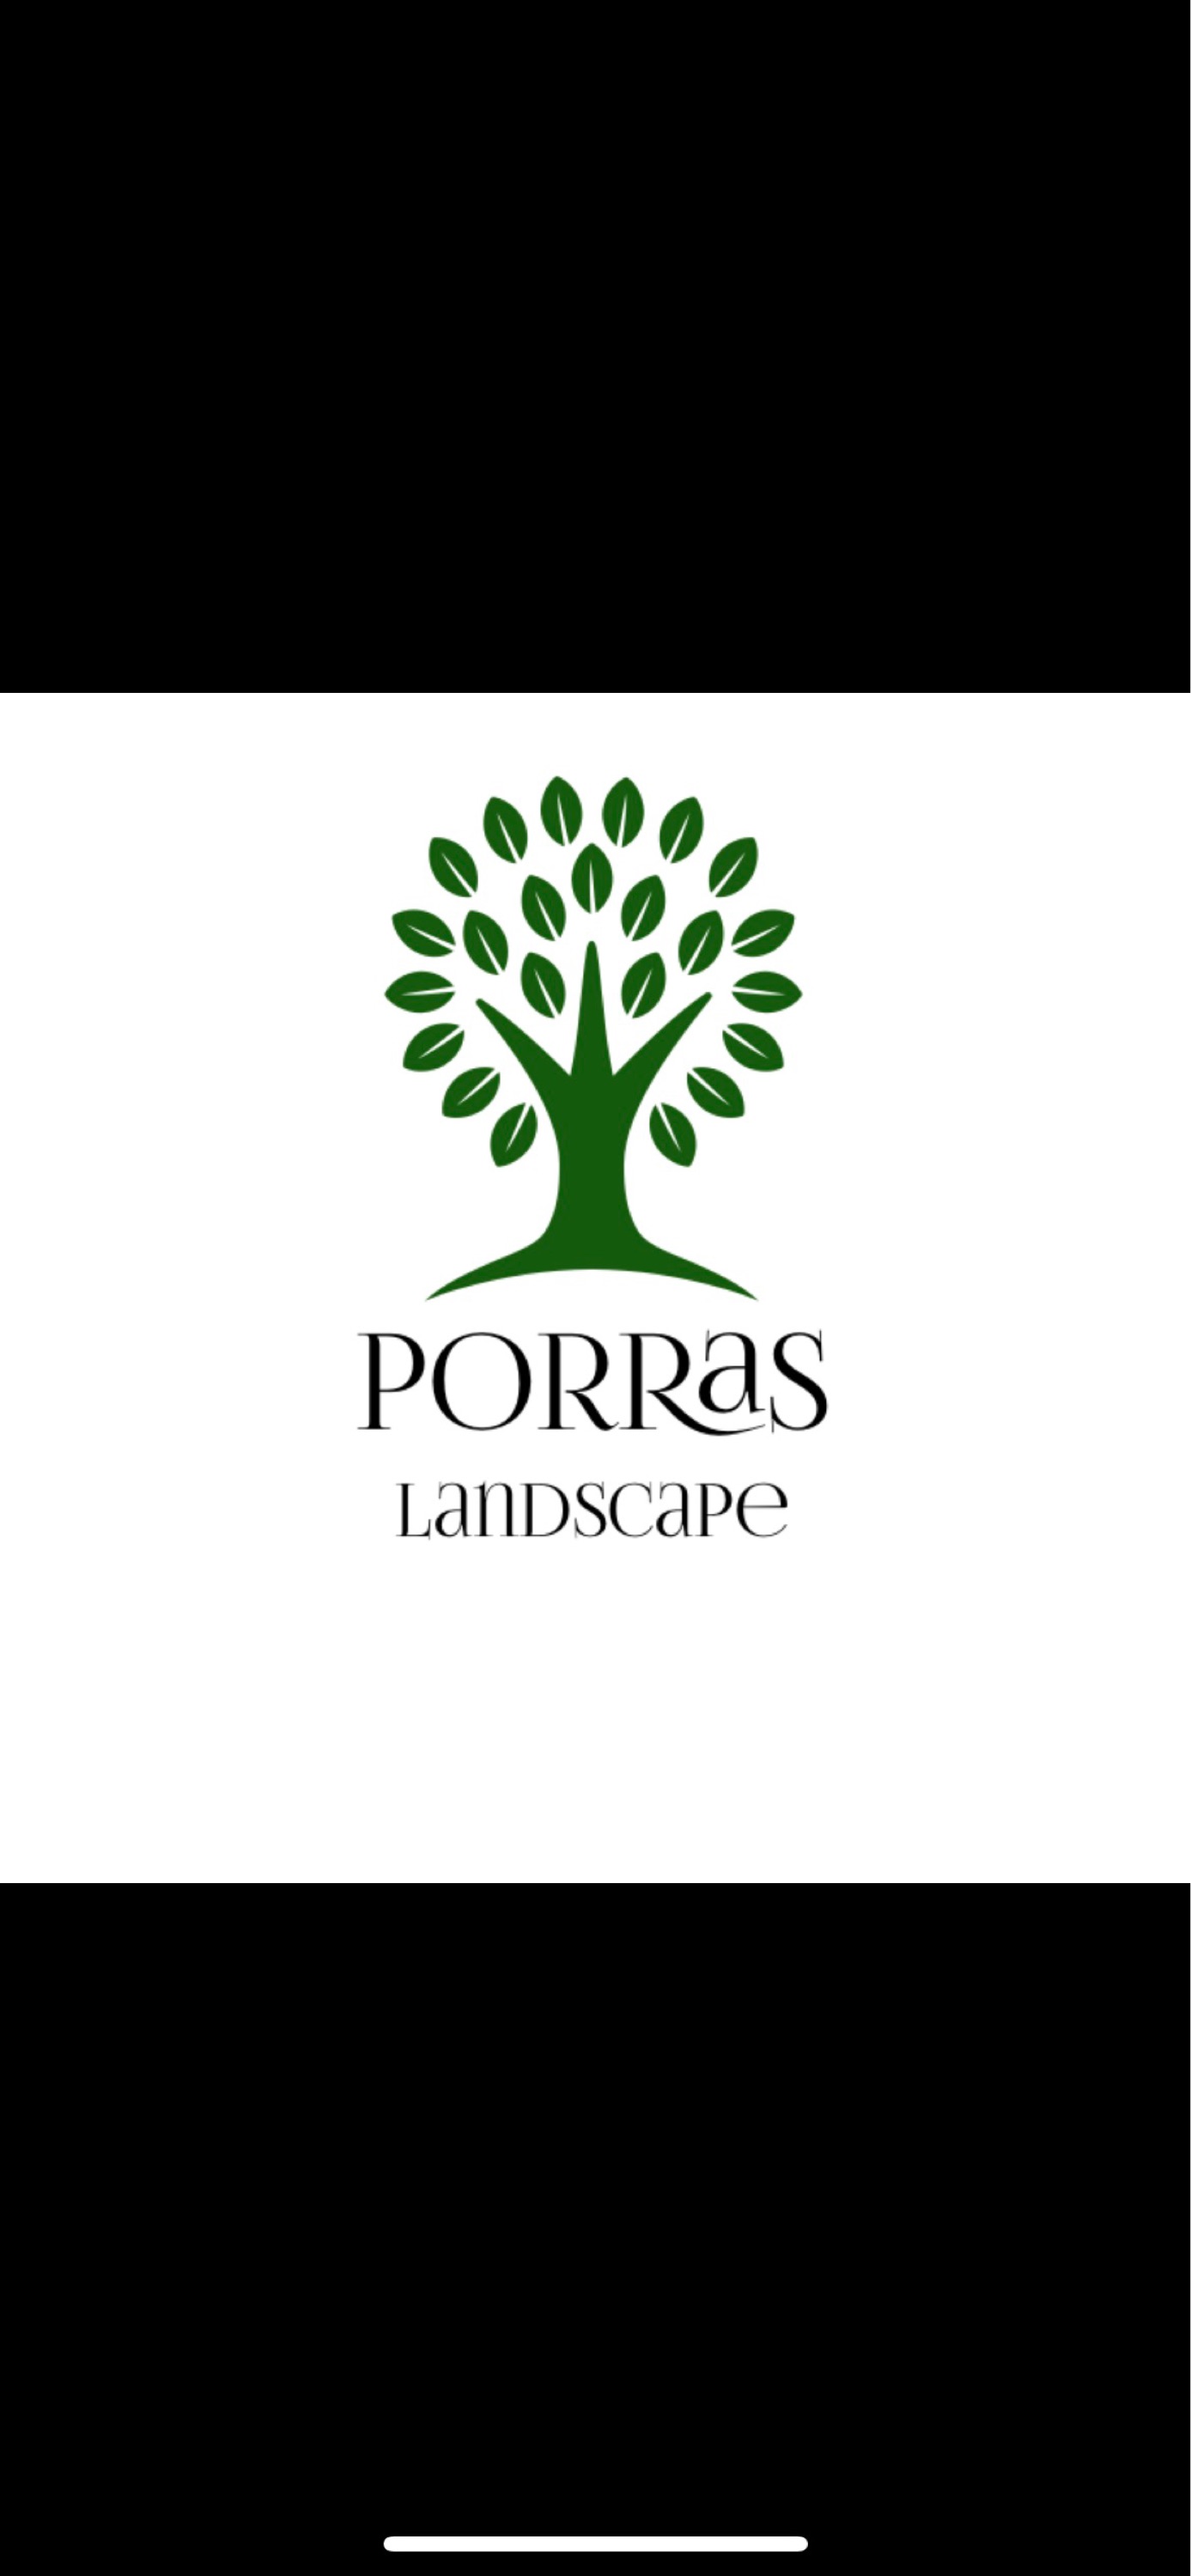 Porras Landscape - Unlicensed Contractor Logo